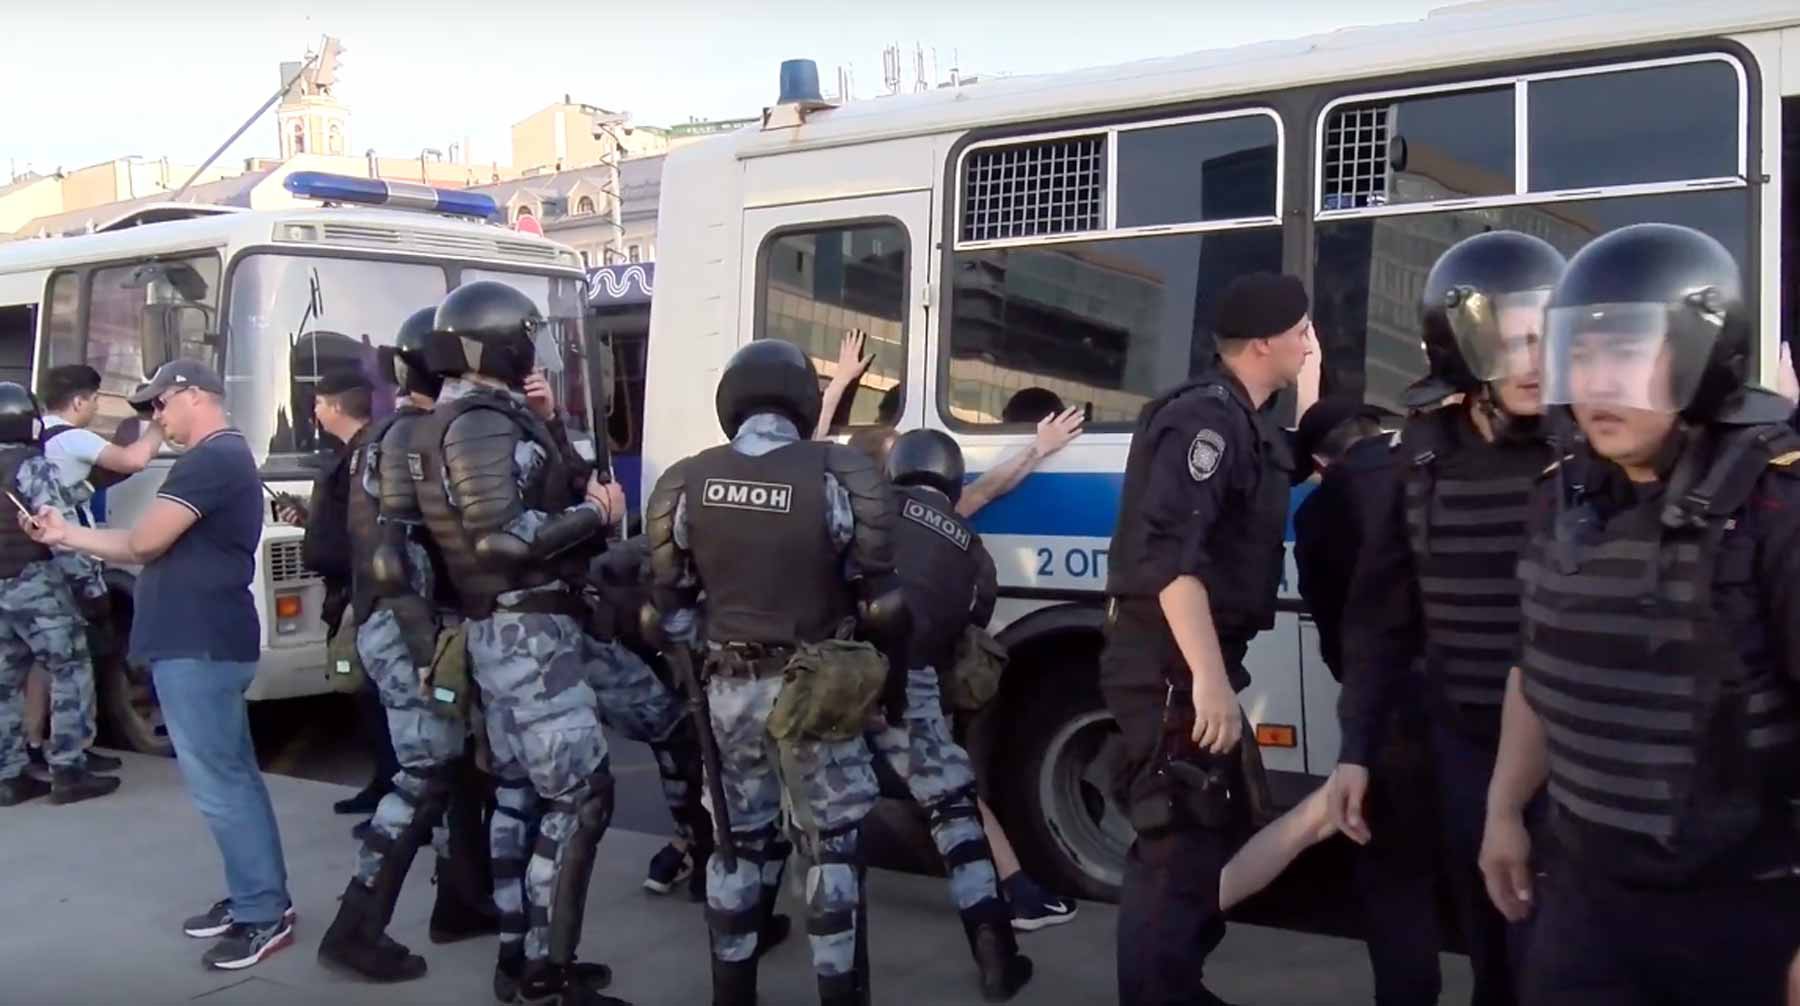 Dailystorm - Суд арестовал участника митинга в Москве за брошенный в омоновца мусорный бак